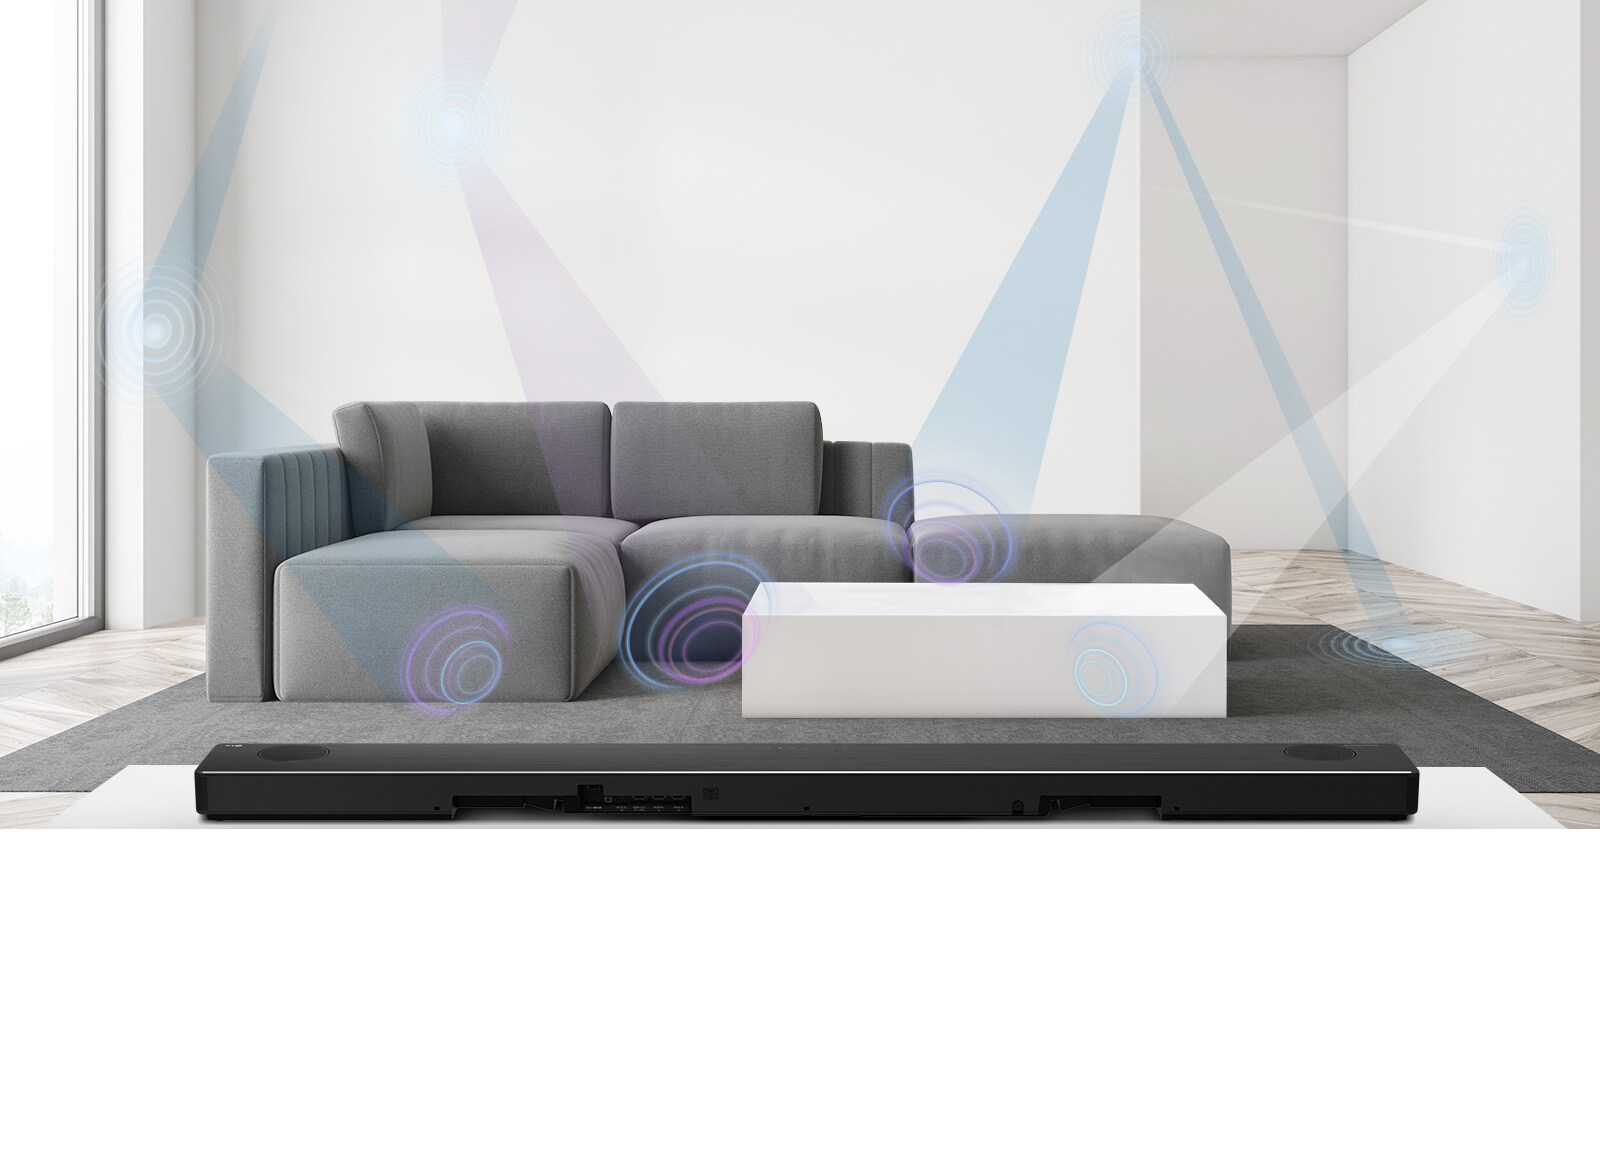 הצד האחורי של סאונד-בר של LG בסלון עם ספה אפורה במרכז. מוצגת גרפיקה של אורך גל המודד את החלל.